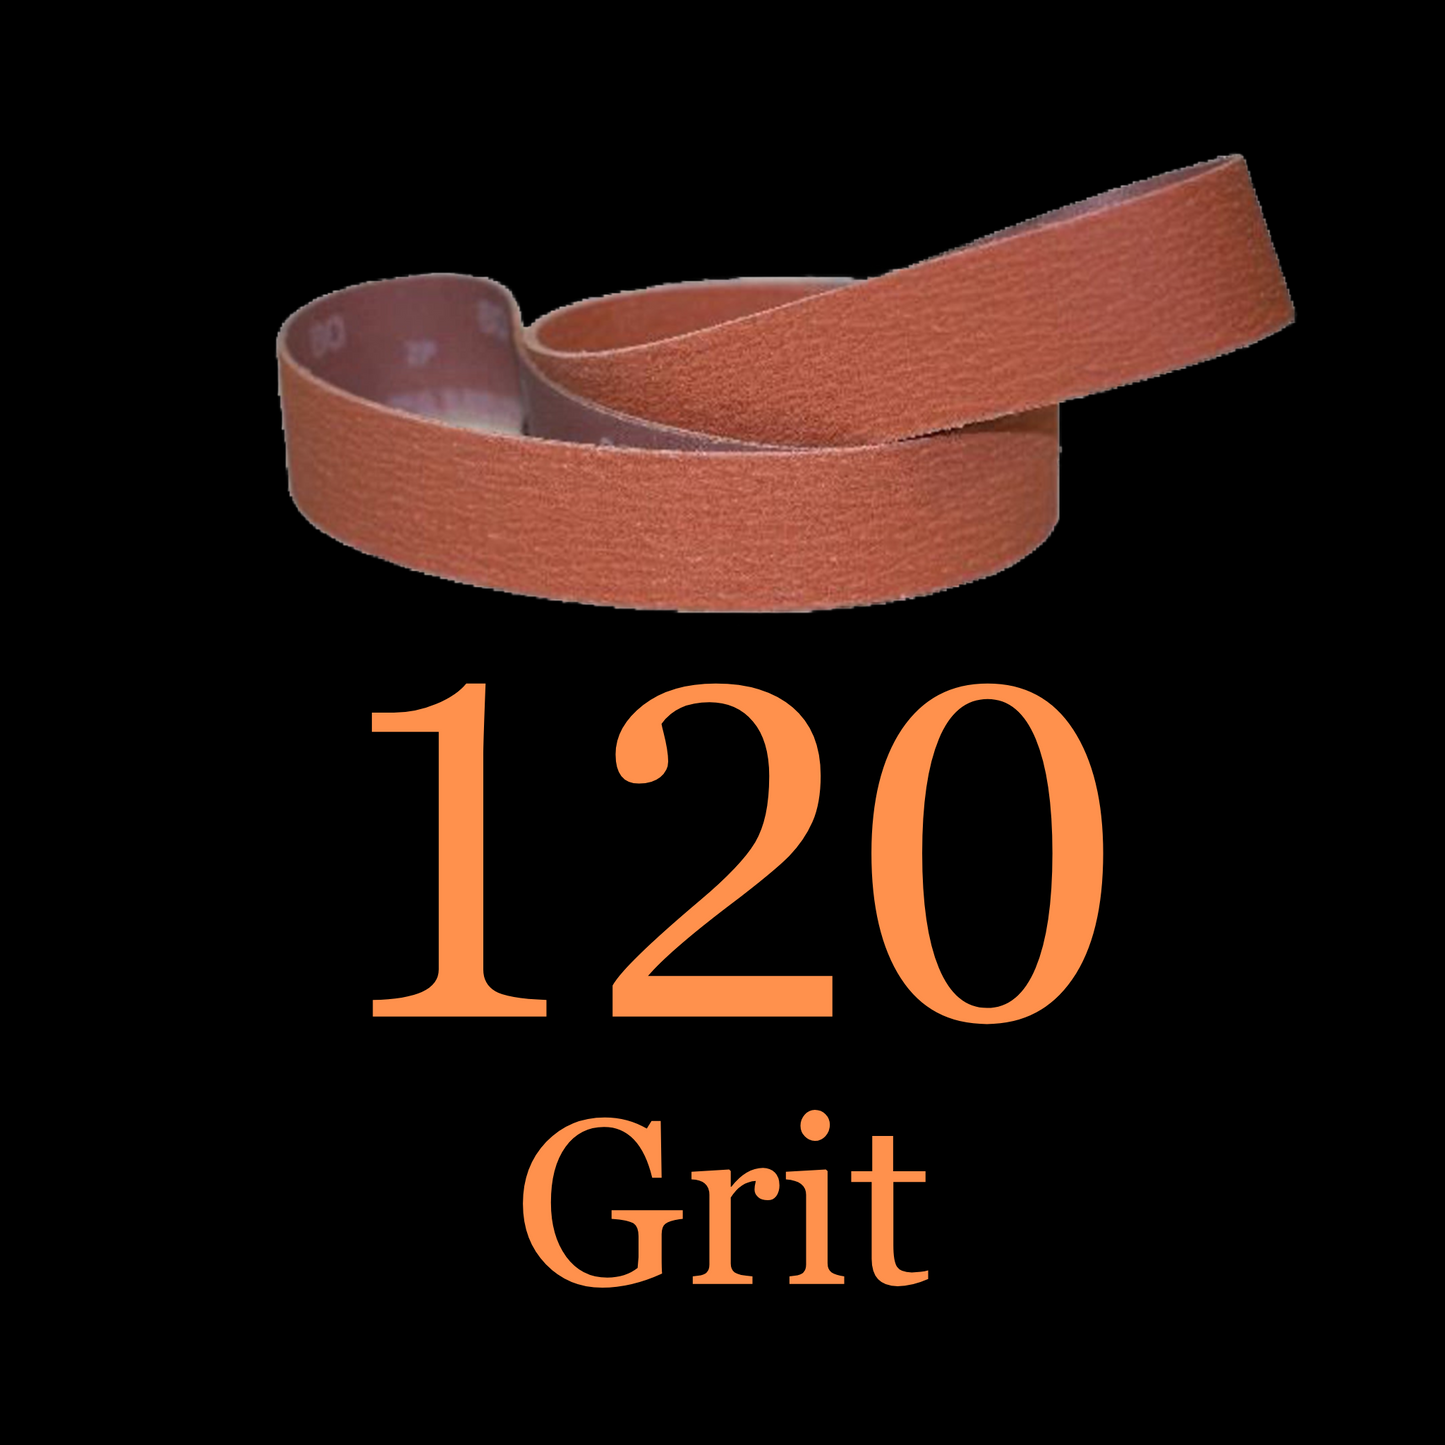 1” x 30” Ceramic Blaze Grinder Belt 120 Grit